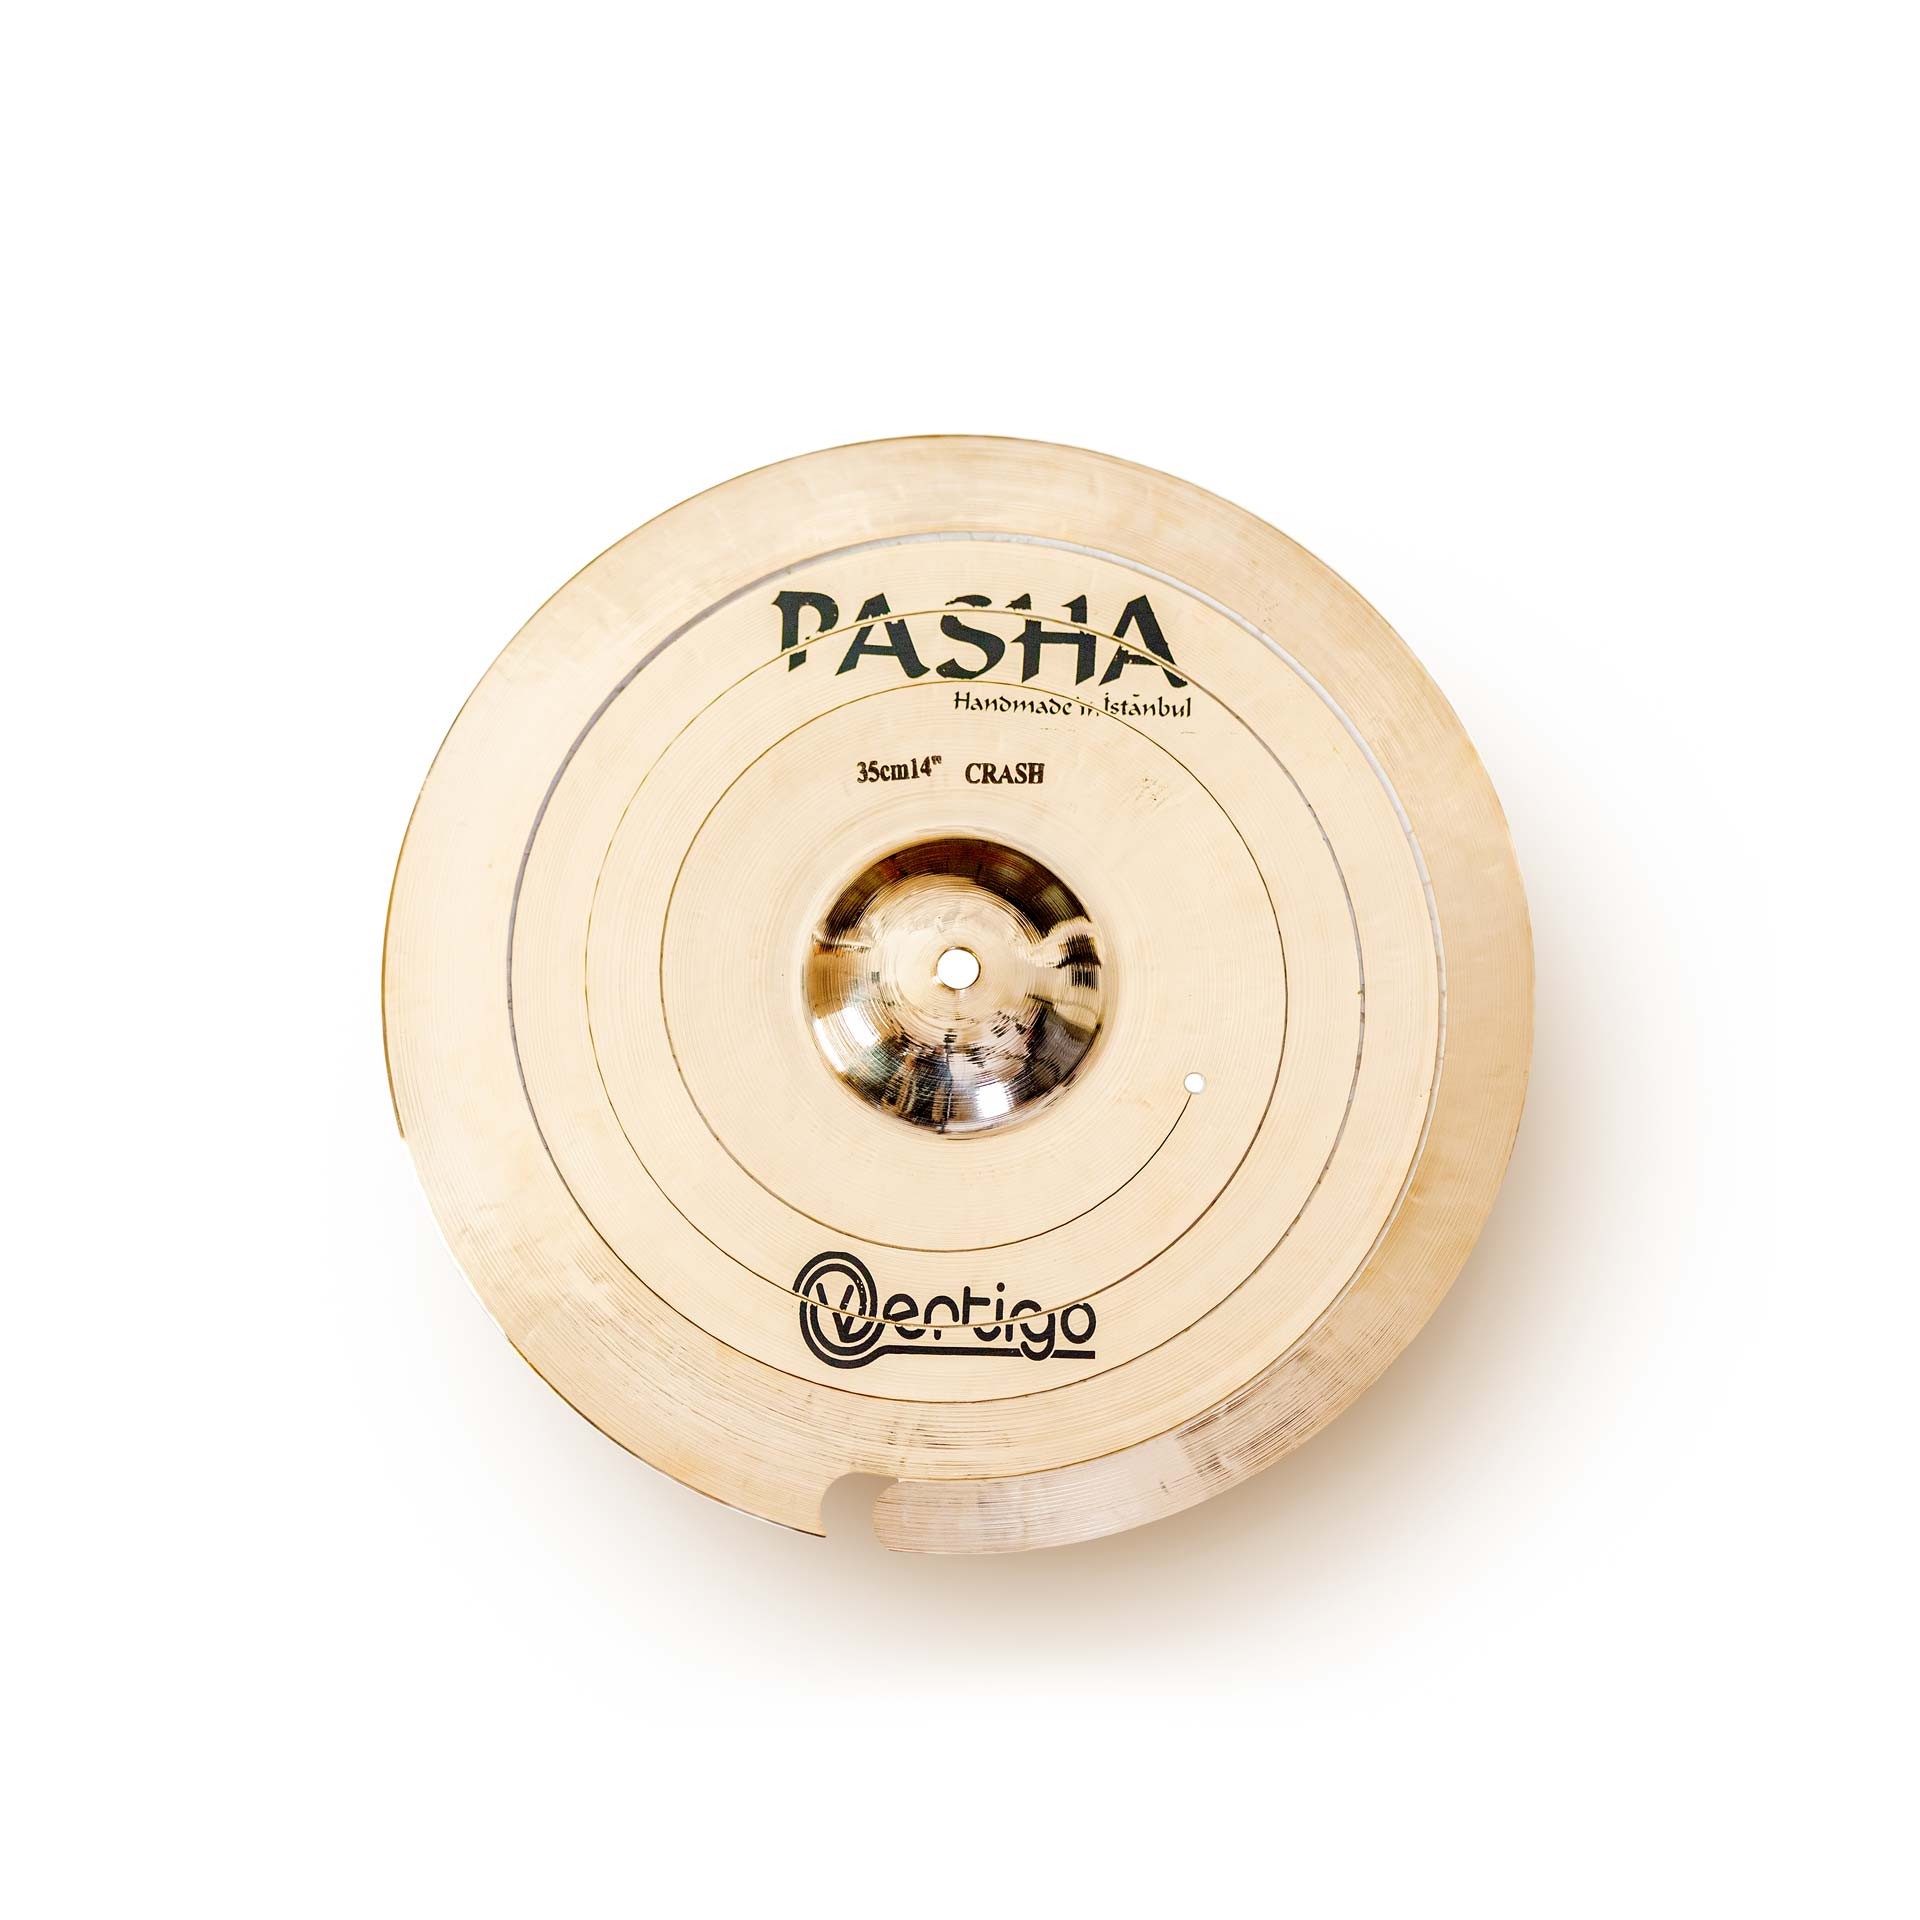 PASHA Pasha Vertigo Spirale (Outlet) VRT-C14